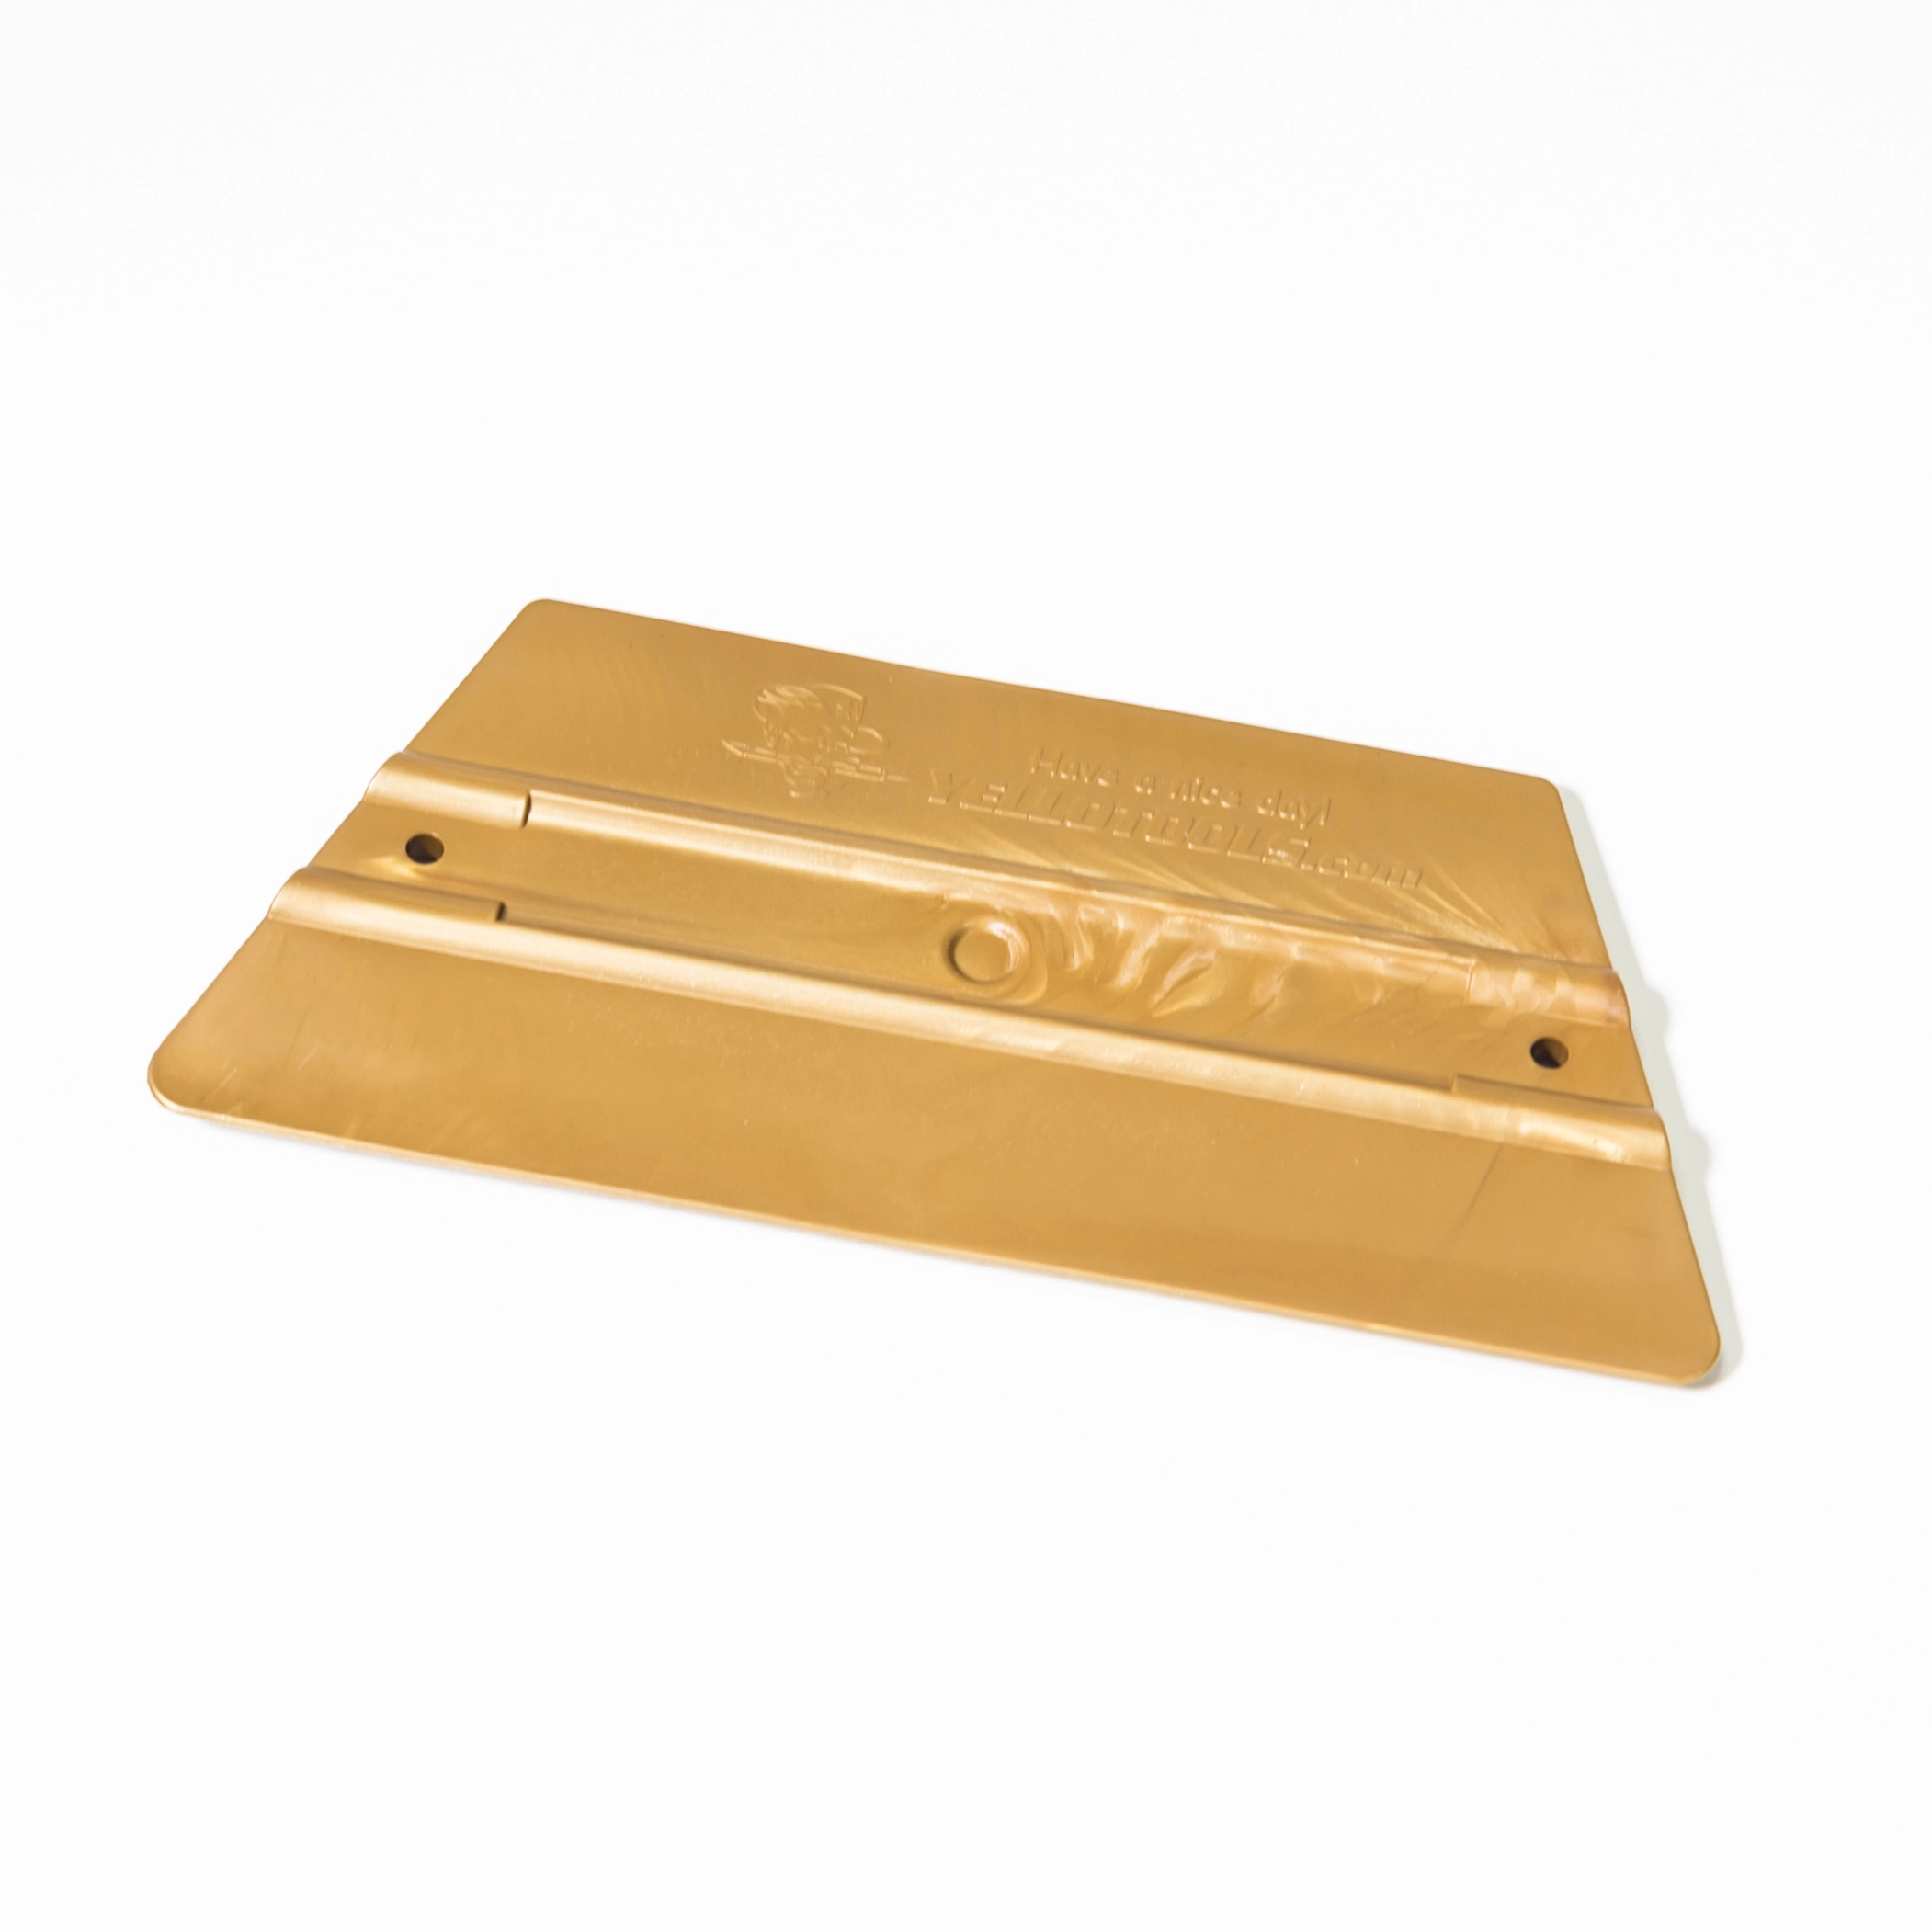 Ракель трапеция YT ProWrap Duo Gold, жесткость 72, золотой, 160х110 мм